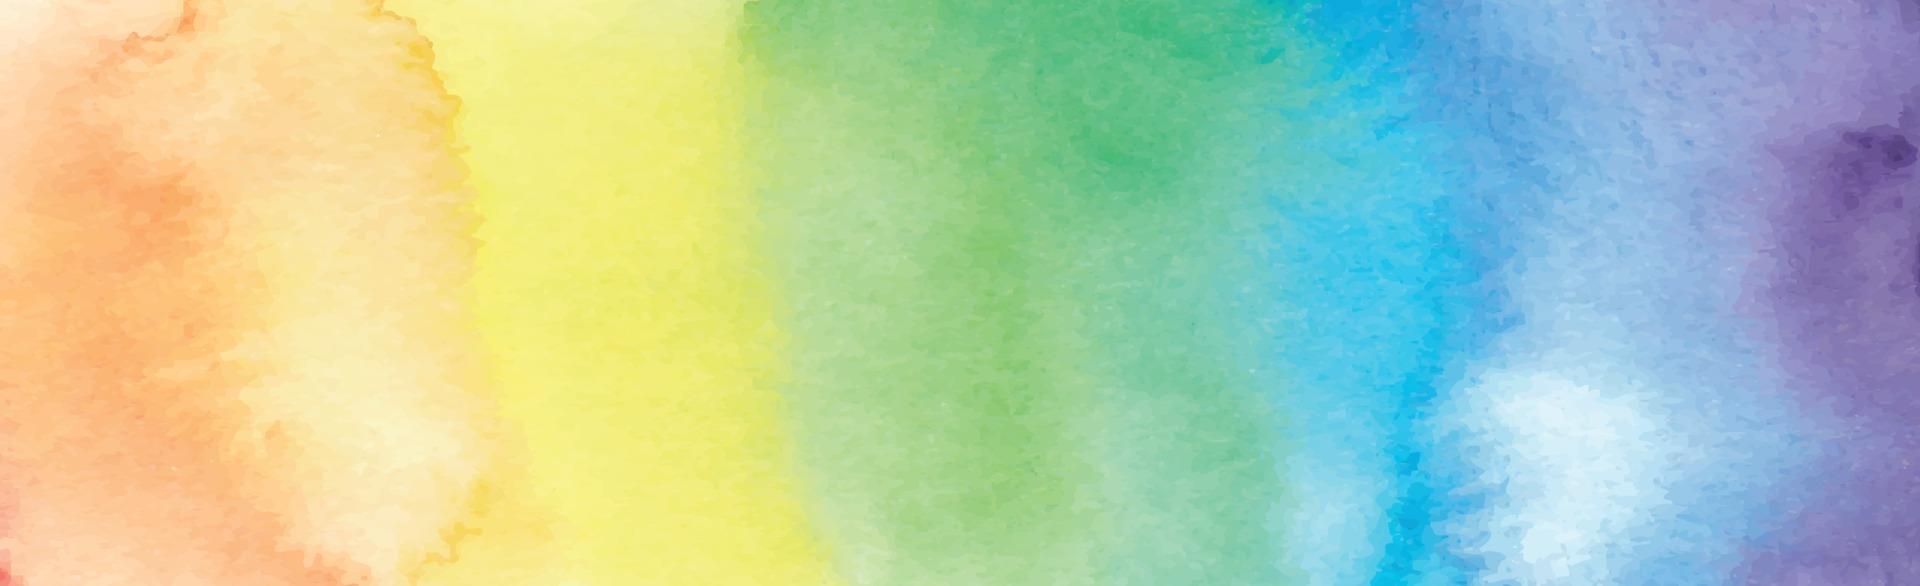 textura panorámica de acuarela multicolor realista sobre un fondo blanco - vector